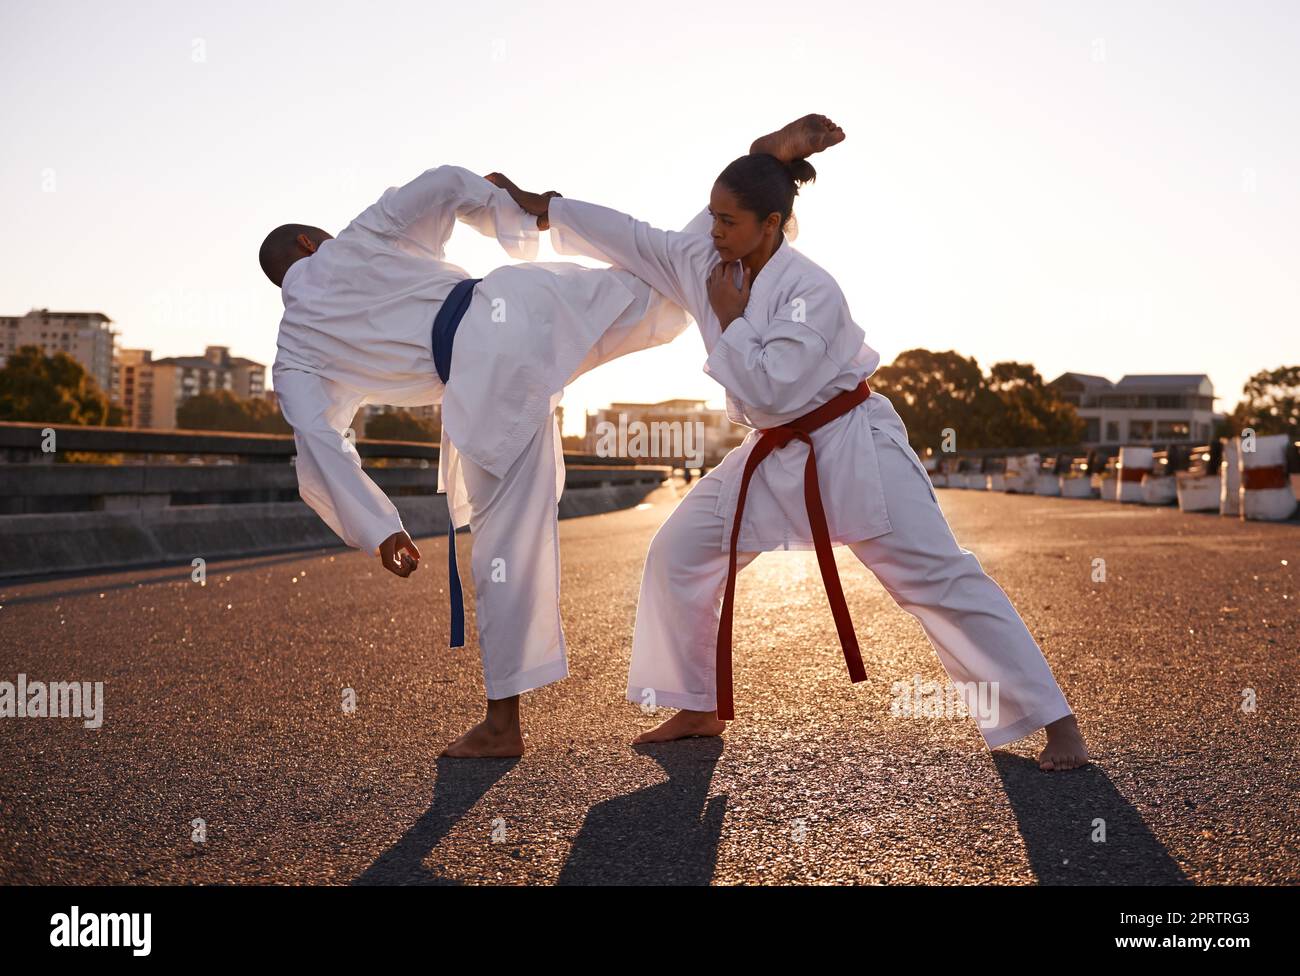 Mit dem Ziel auf ihren Kopf. Zwei Sportler stehen sich gegenüber und üben ihr Karate, während sie GI tragen. Stockfoto